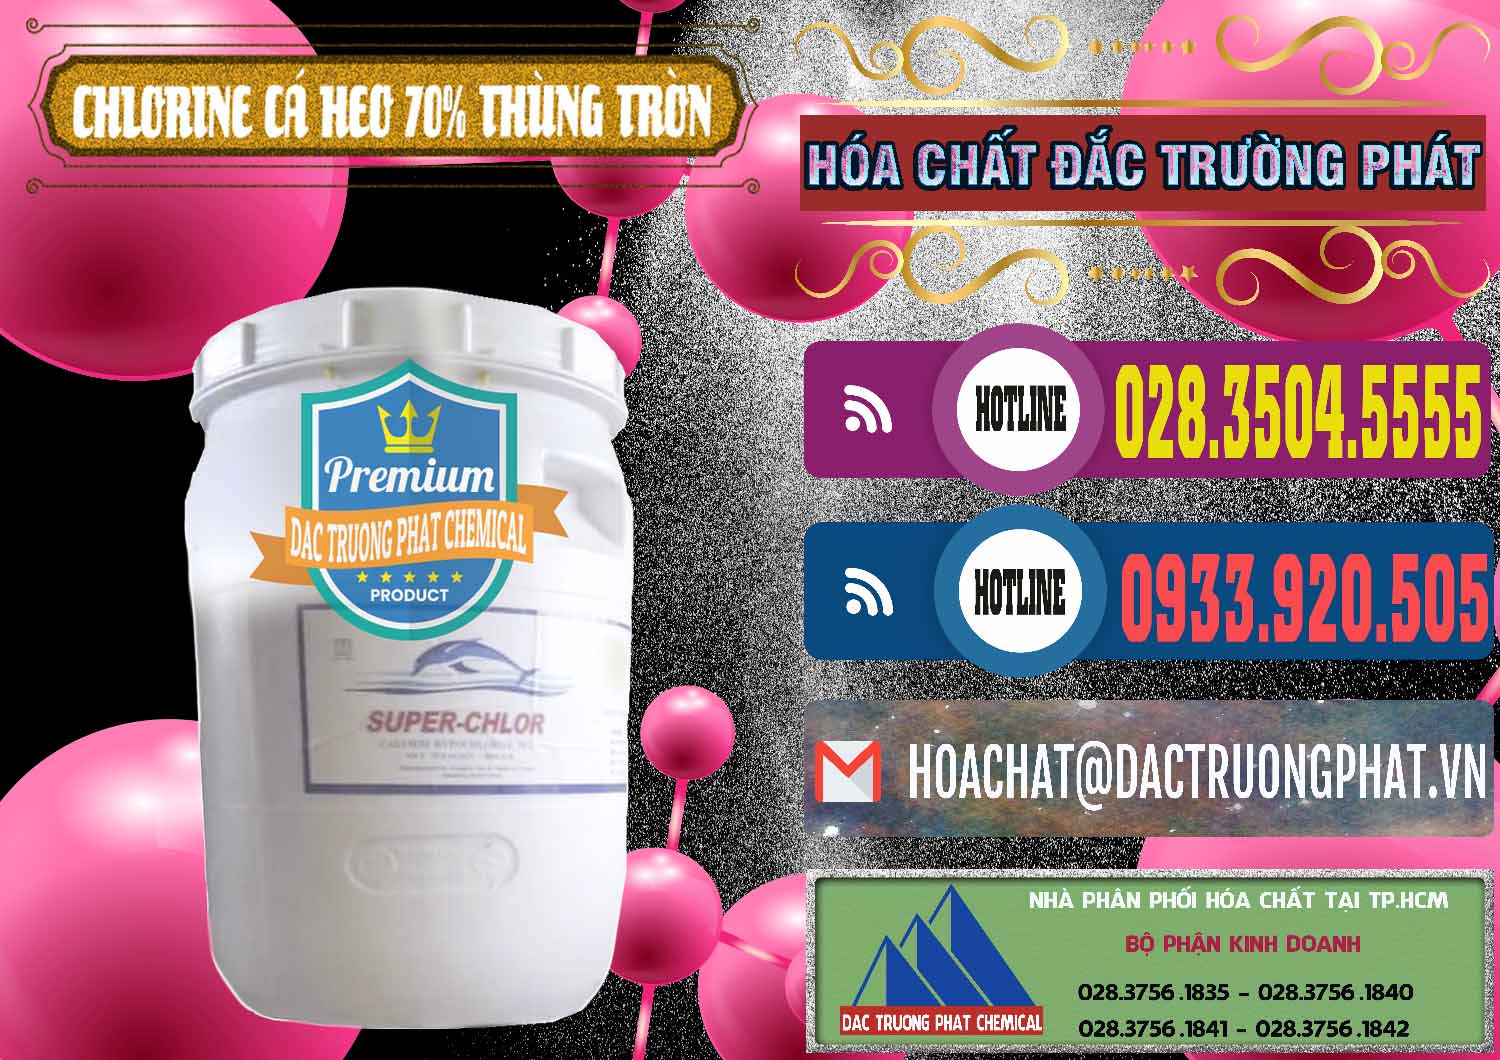 Bán - cung cấp Clorin - Chlorine Cá Heo 70% Super Chlor Thùng Tròn Nắp Trắng Trung Quốc China - 0239 - Cty chuyên bán & cung cấp hóa chất tại TP.HCM - muabanhoachat.com.vn